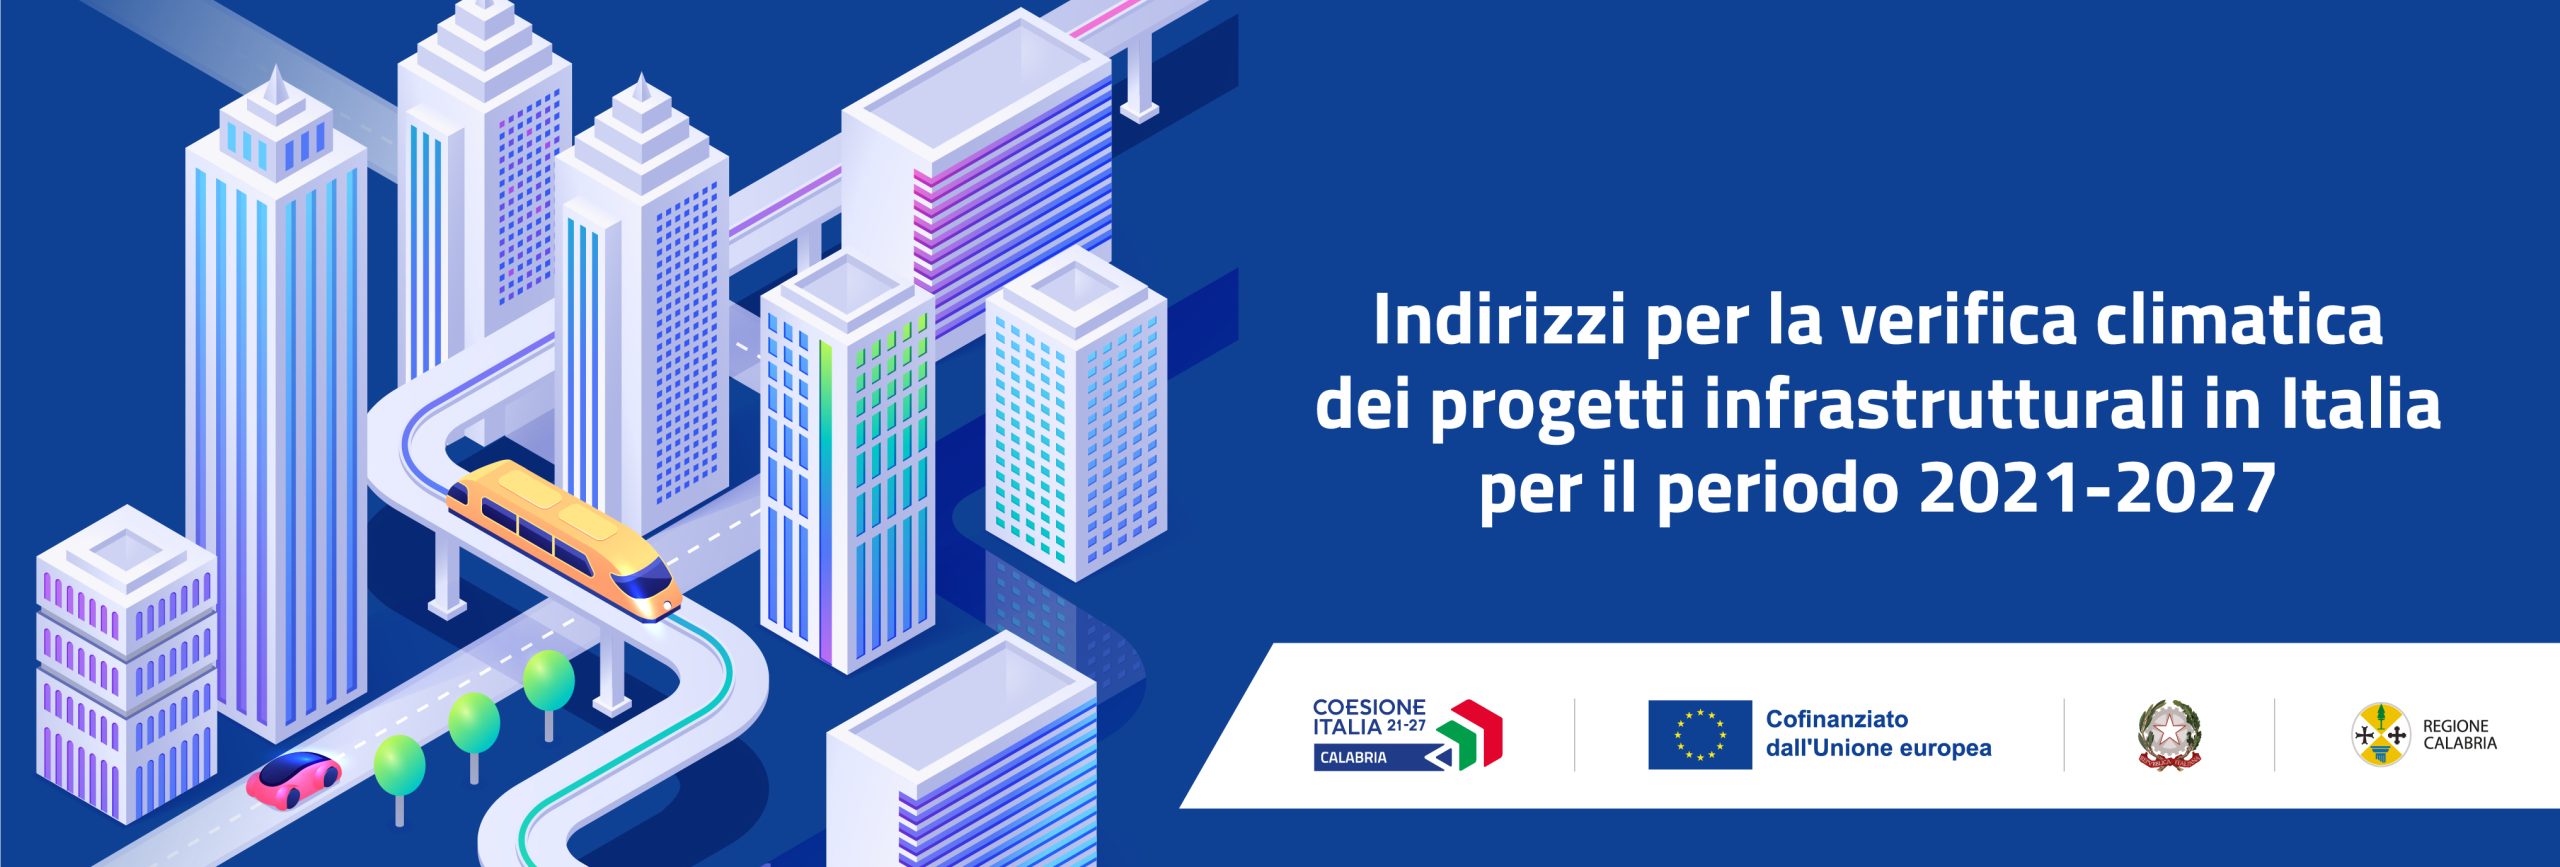 Disponibili sul portale “CalabriaEuropa” gli Indirizzi per la verifica climatica dei progetti infrastrutturali in Italia per il periodo 2021-2027